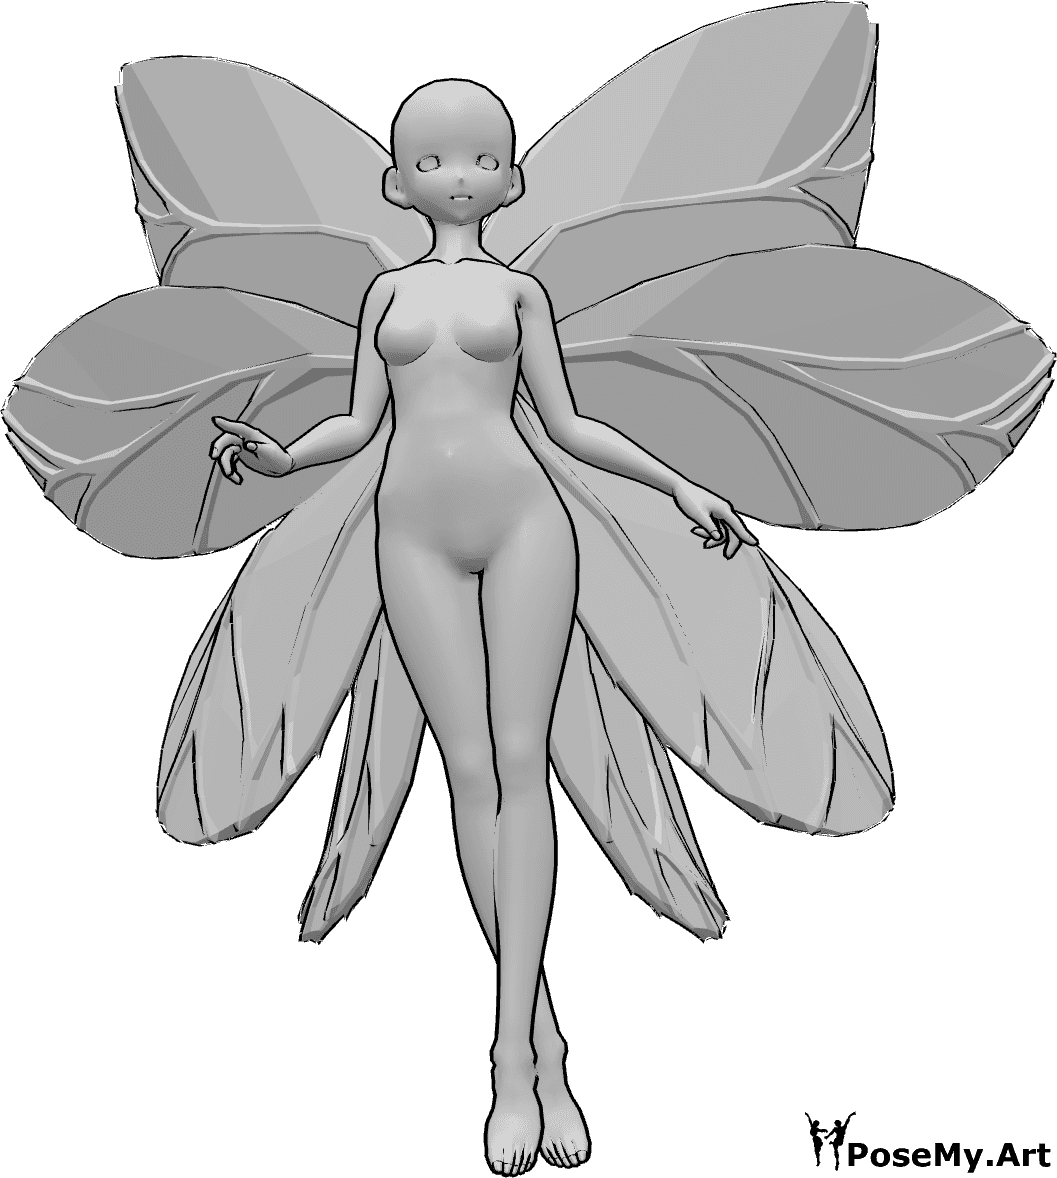 Référence des poses- Anime fée volant pose - Une femme animée avec des ailes de fée vole en regardant vers l'avant, ses jambes sont croisées.